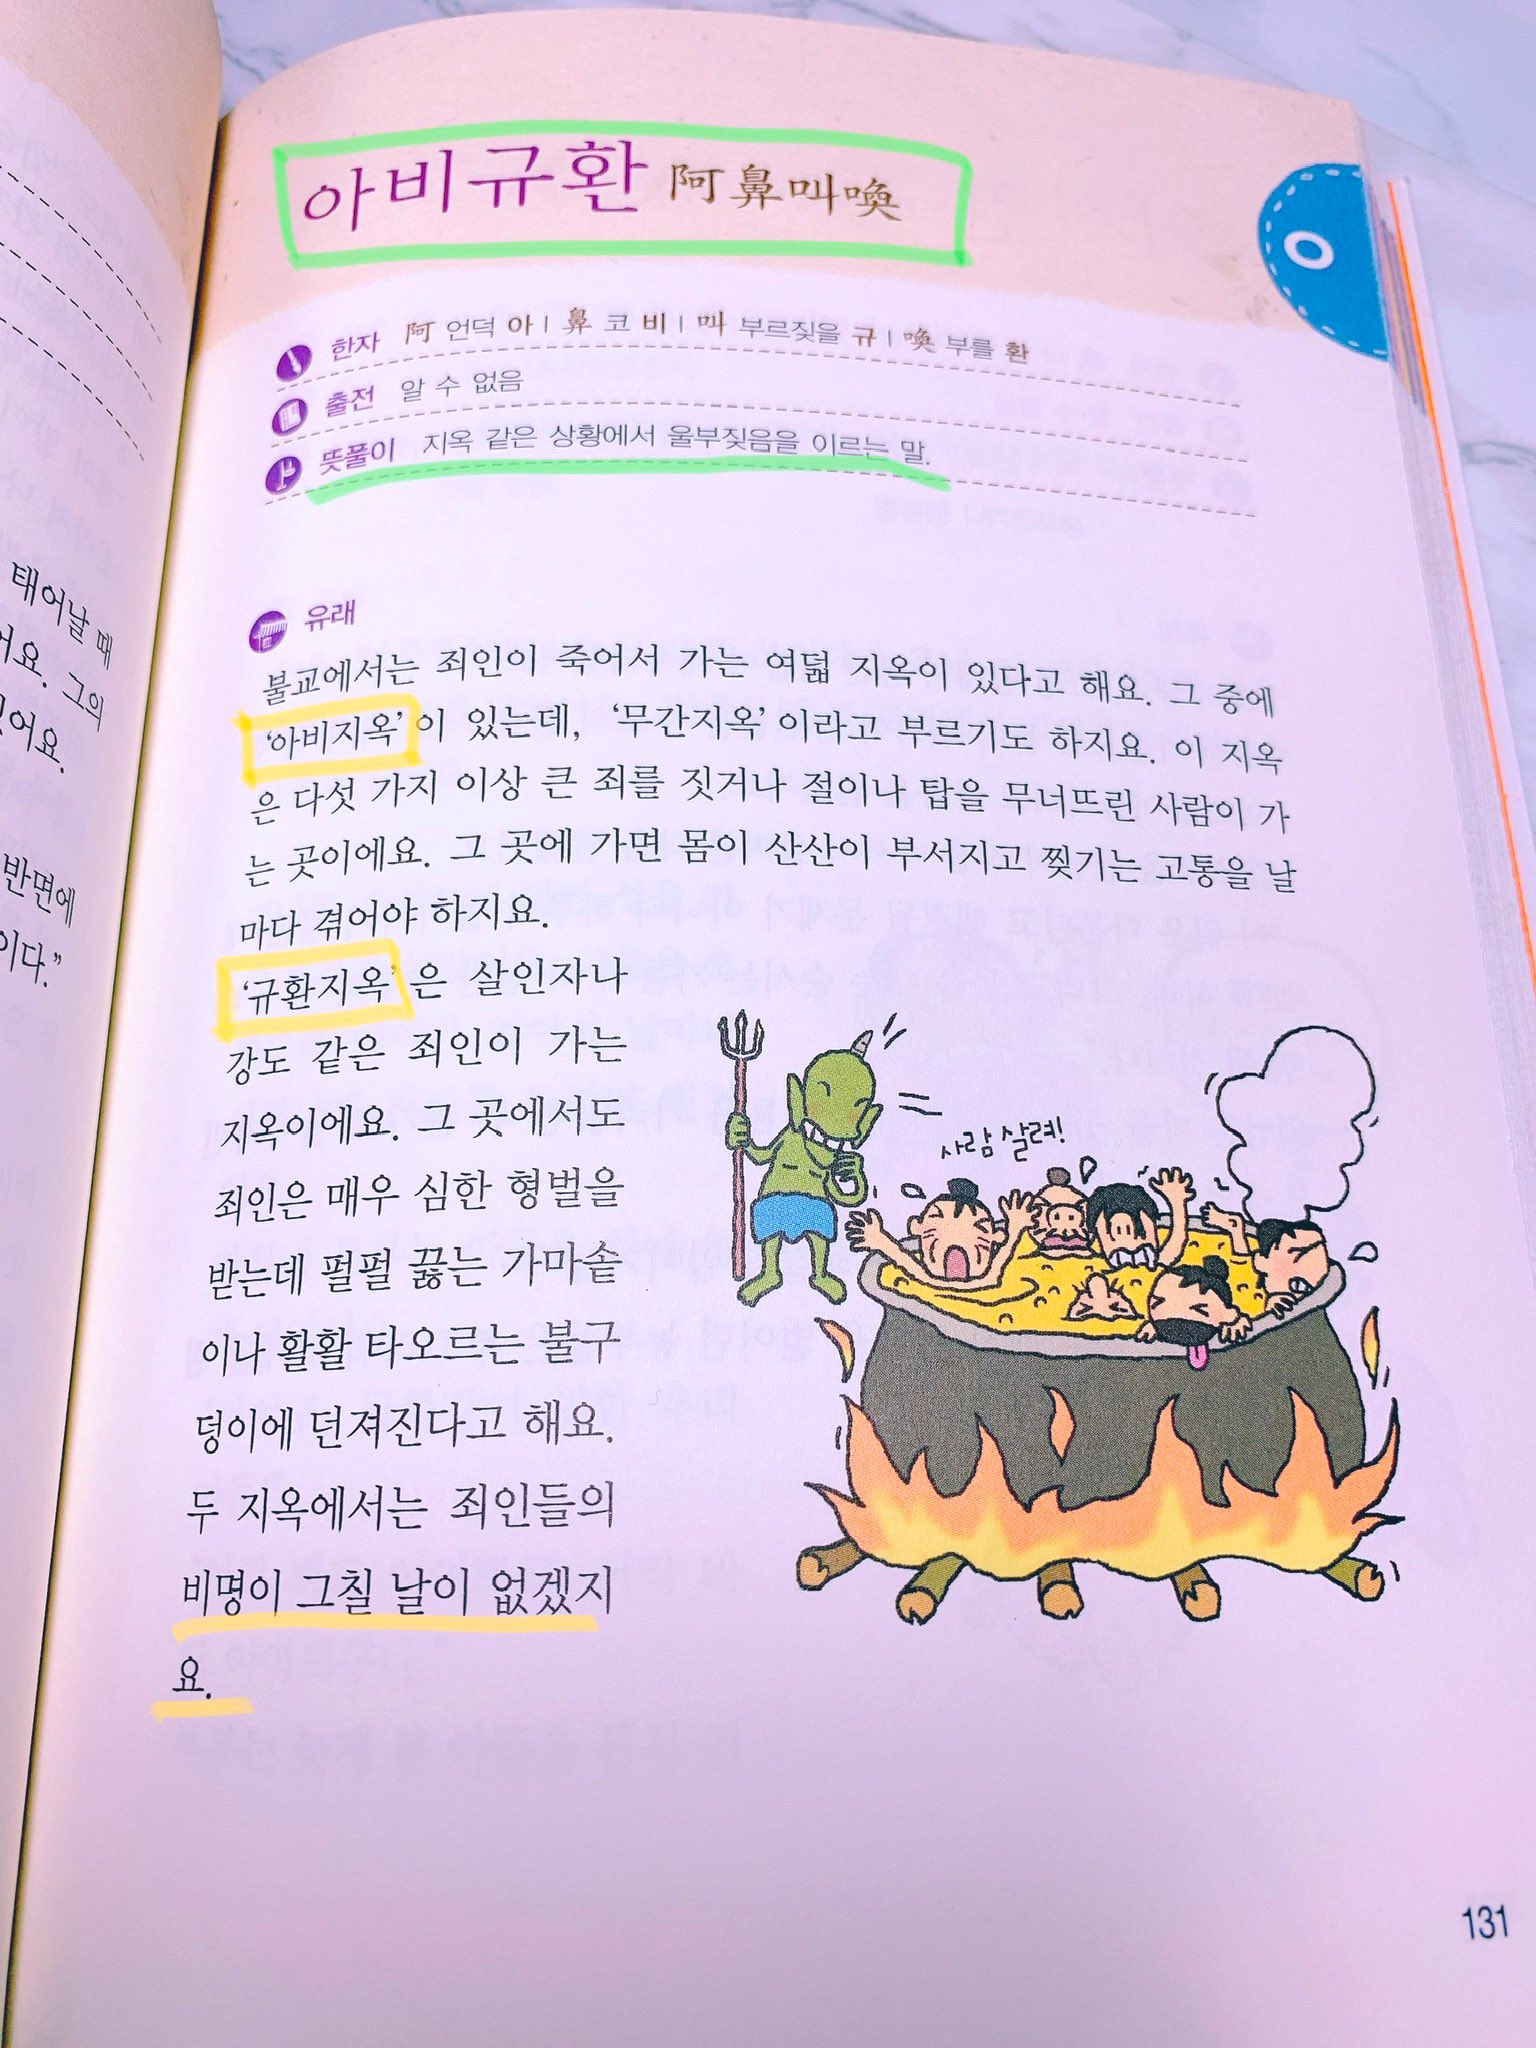 韓国語のhana ハン検2 1級目指している方におすすめ 故事成語とことわざ辞典 故事成語には由来が書いてあるので成り立ちから理解出来て覚えやすい 諺の方はただの説明だから日本から出てるので勉強すればよいと思う 私のおすすめ韓国語本 とんそく子